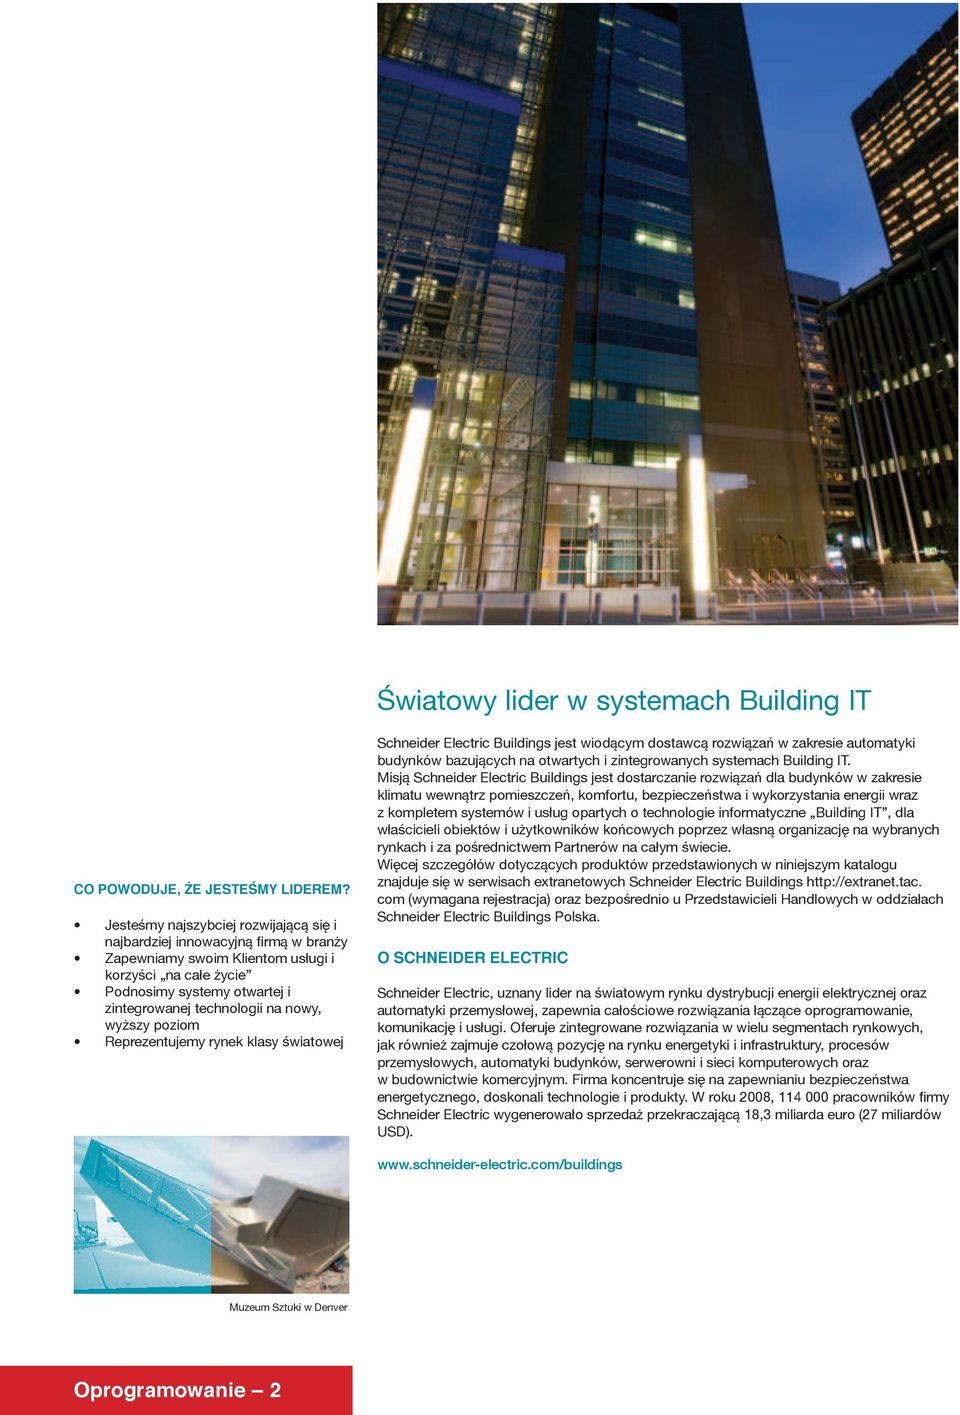 wyższy poziom Reprezentujemy rynek klasy światowej Schnei der Electric Buildings jest wiodącym dostawcą rozwiązań w zakresie automatyki budynków bazujących na otwartych i zintegrowanych systemach